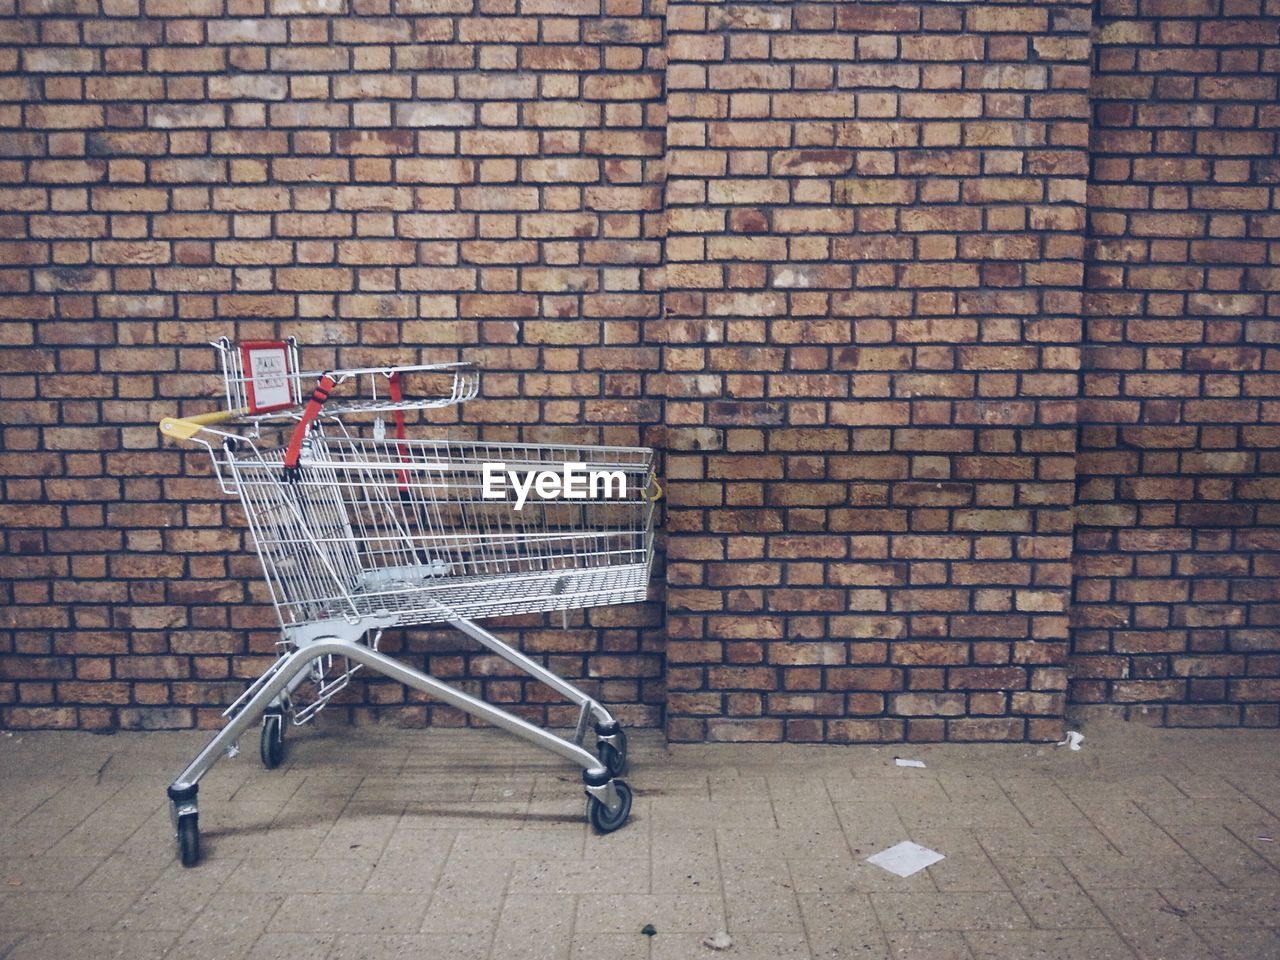 Shopping cart on sidewalk against brick wall